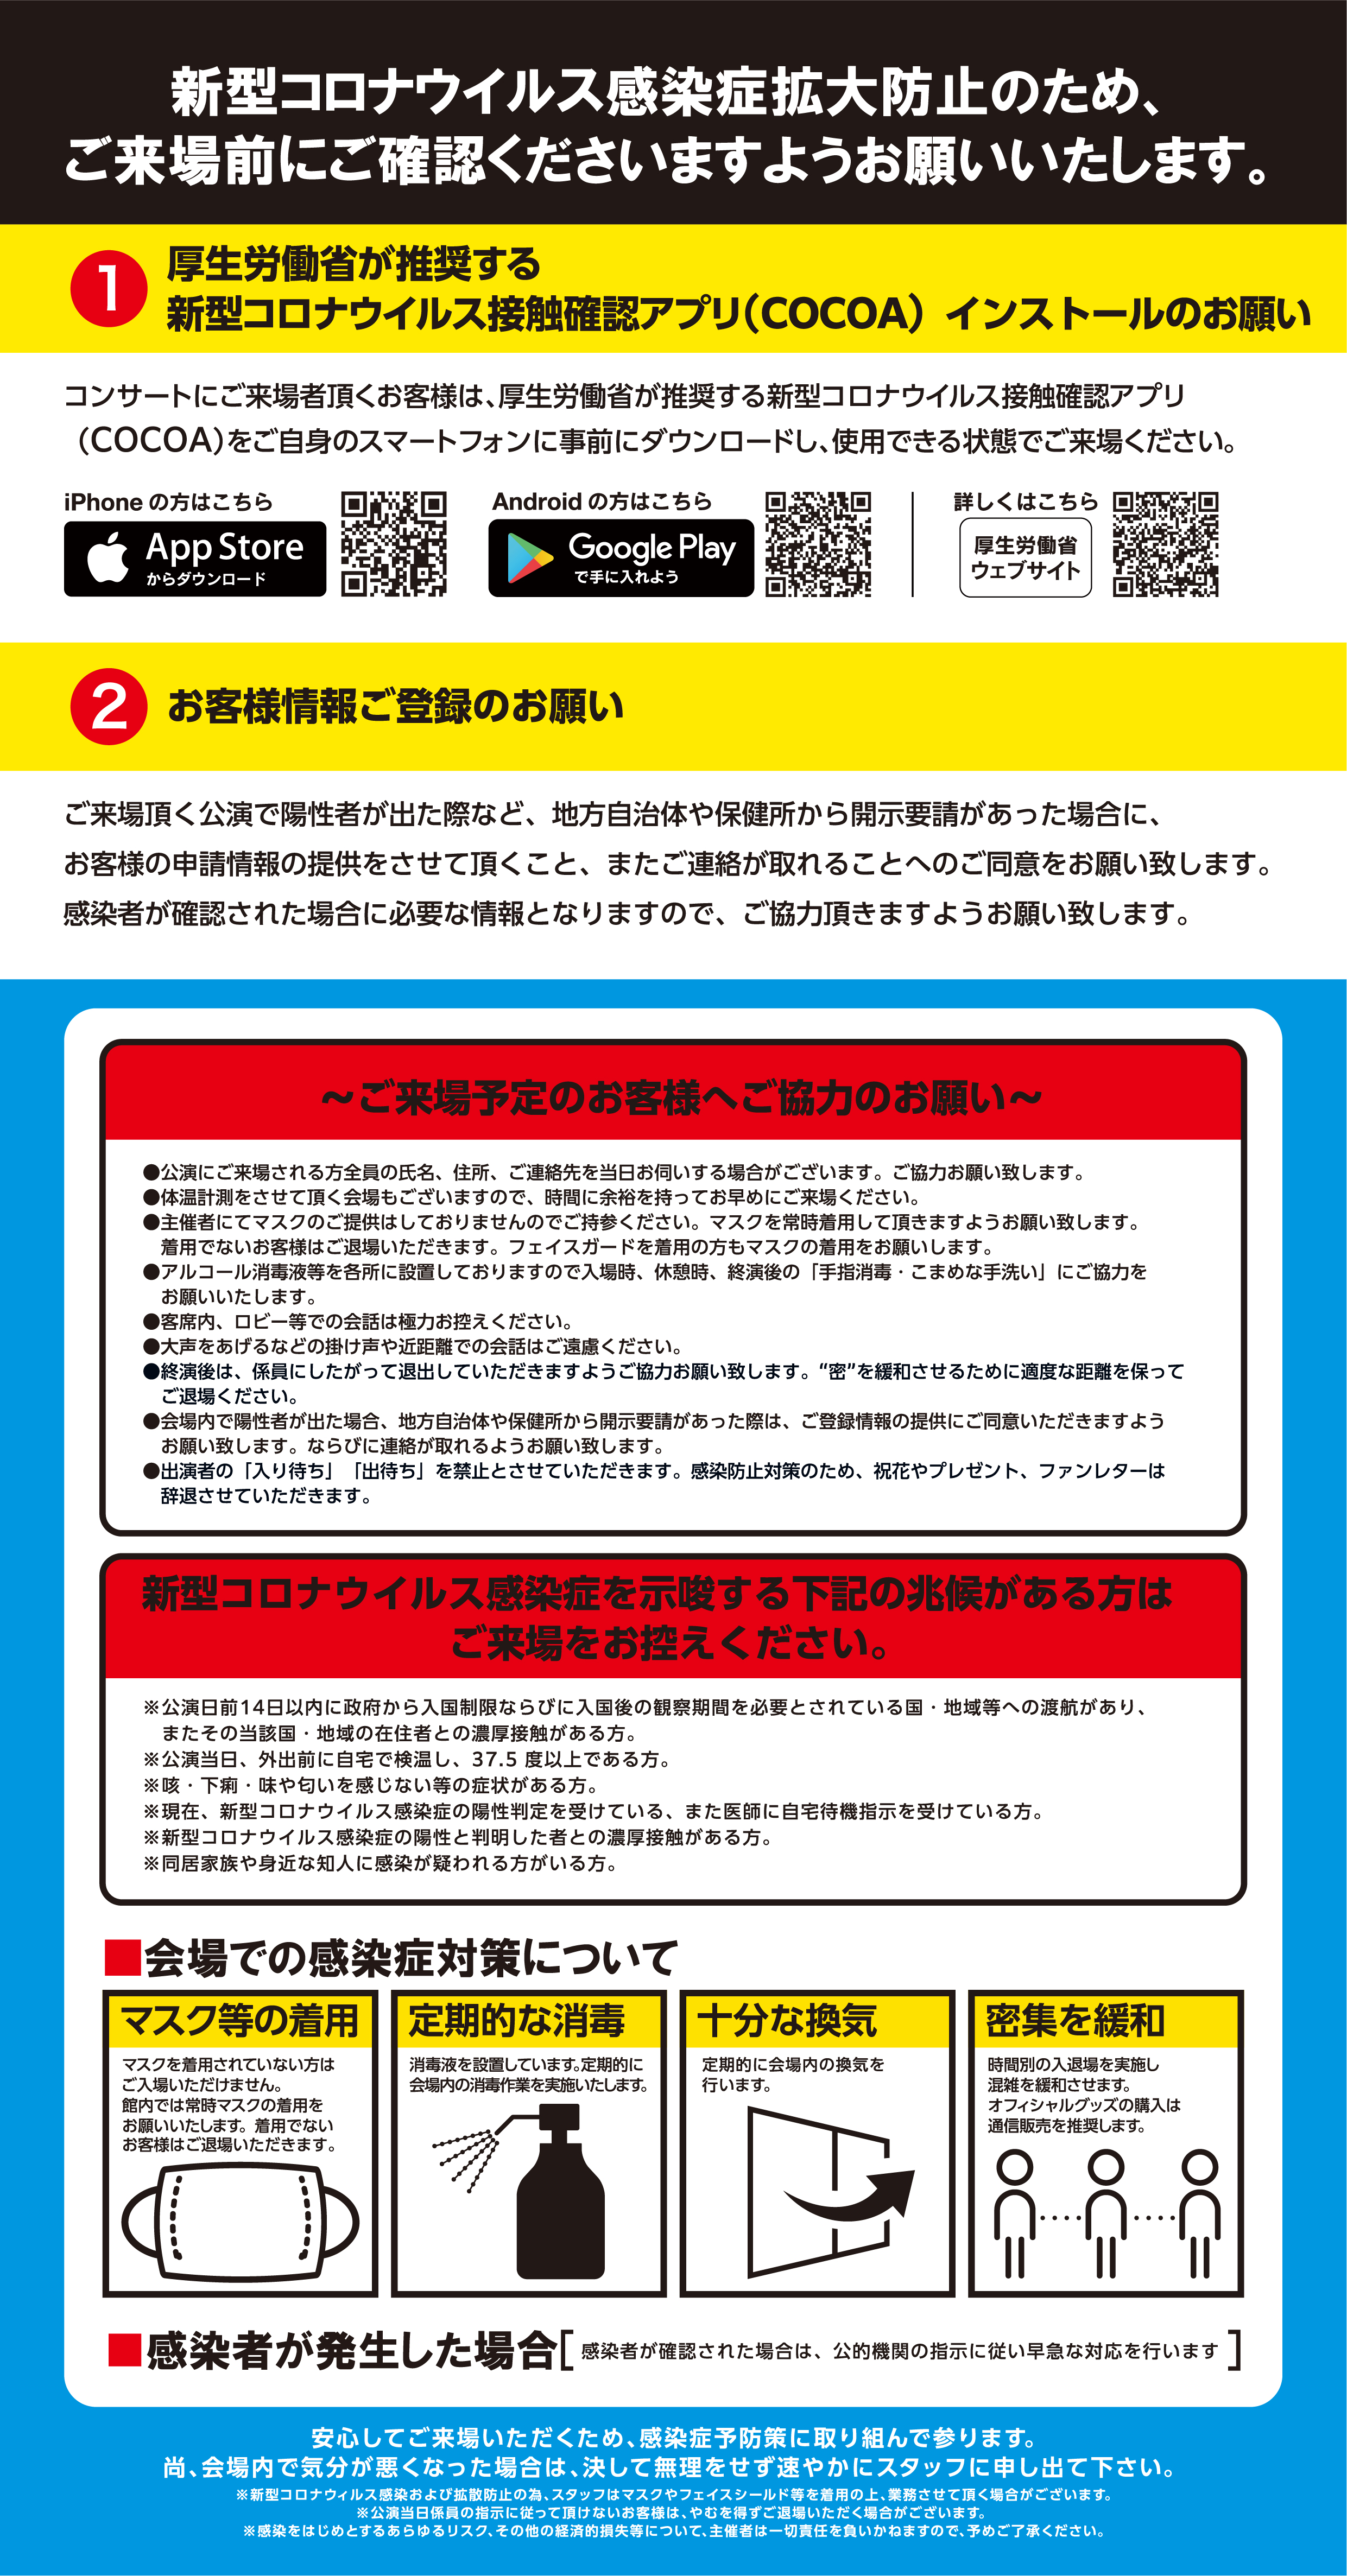 コンサート会場での新型コロナウイルス感染予防の対策について 藤井フミヤ オフィシャルサイト